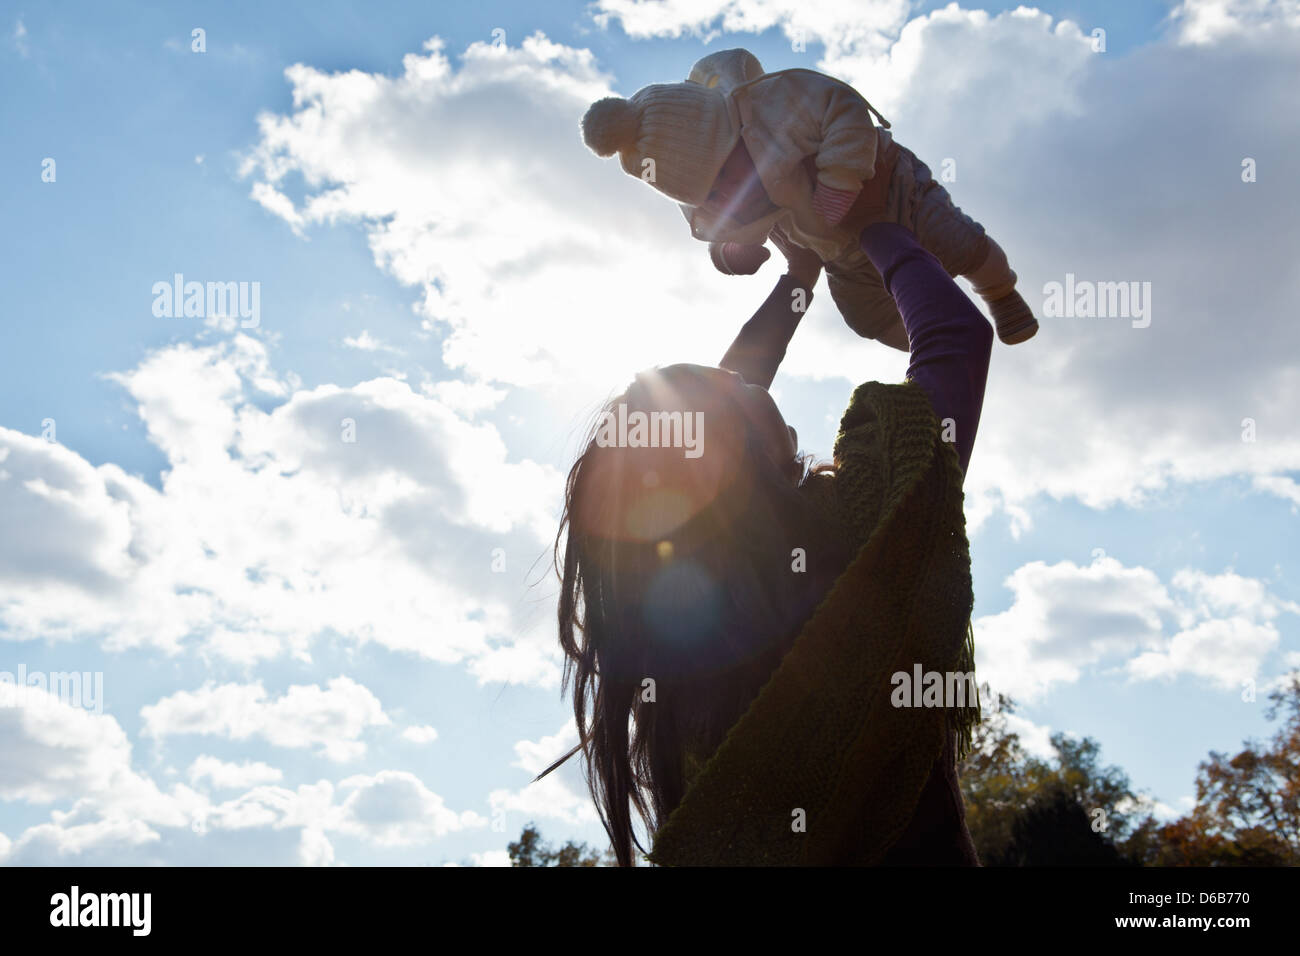 Madre giocando con la bambina all'aperto Foto Stock